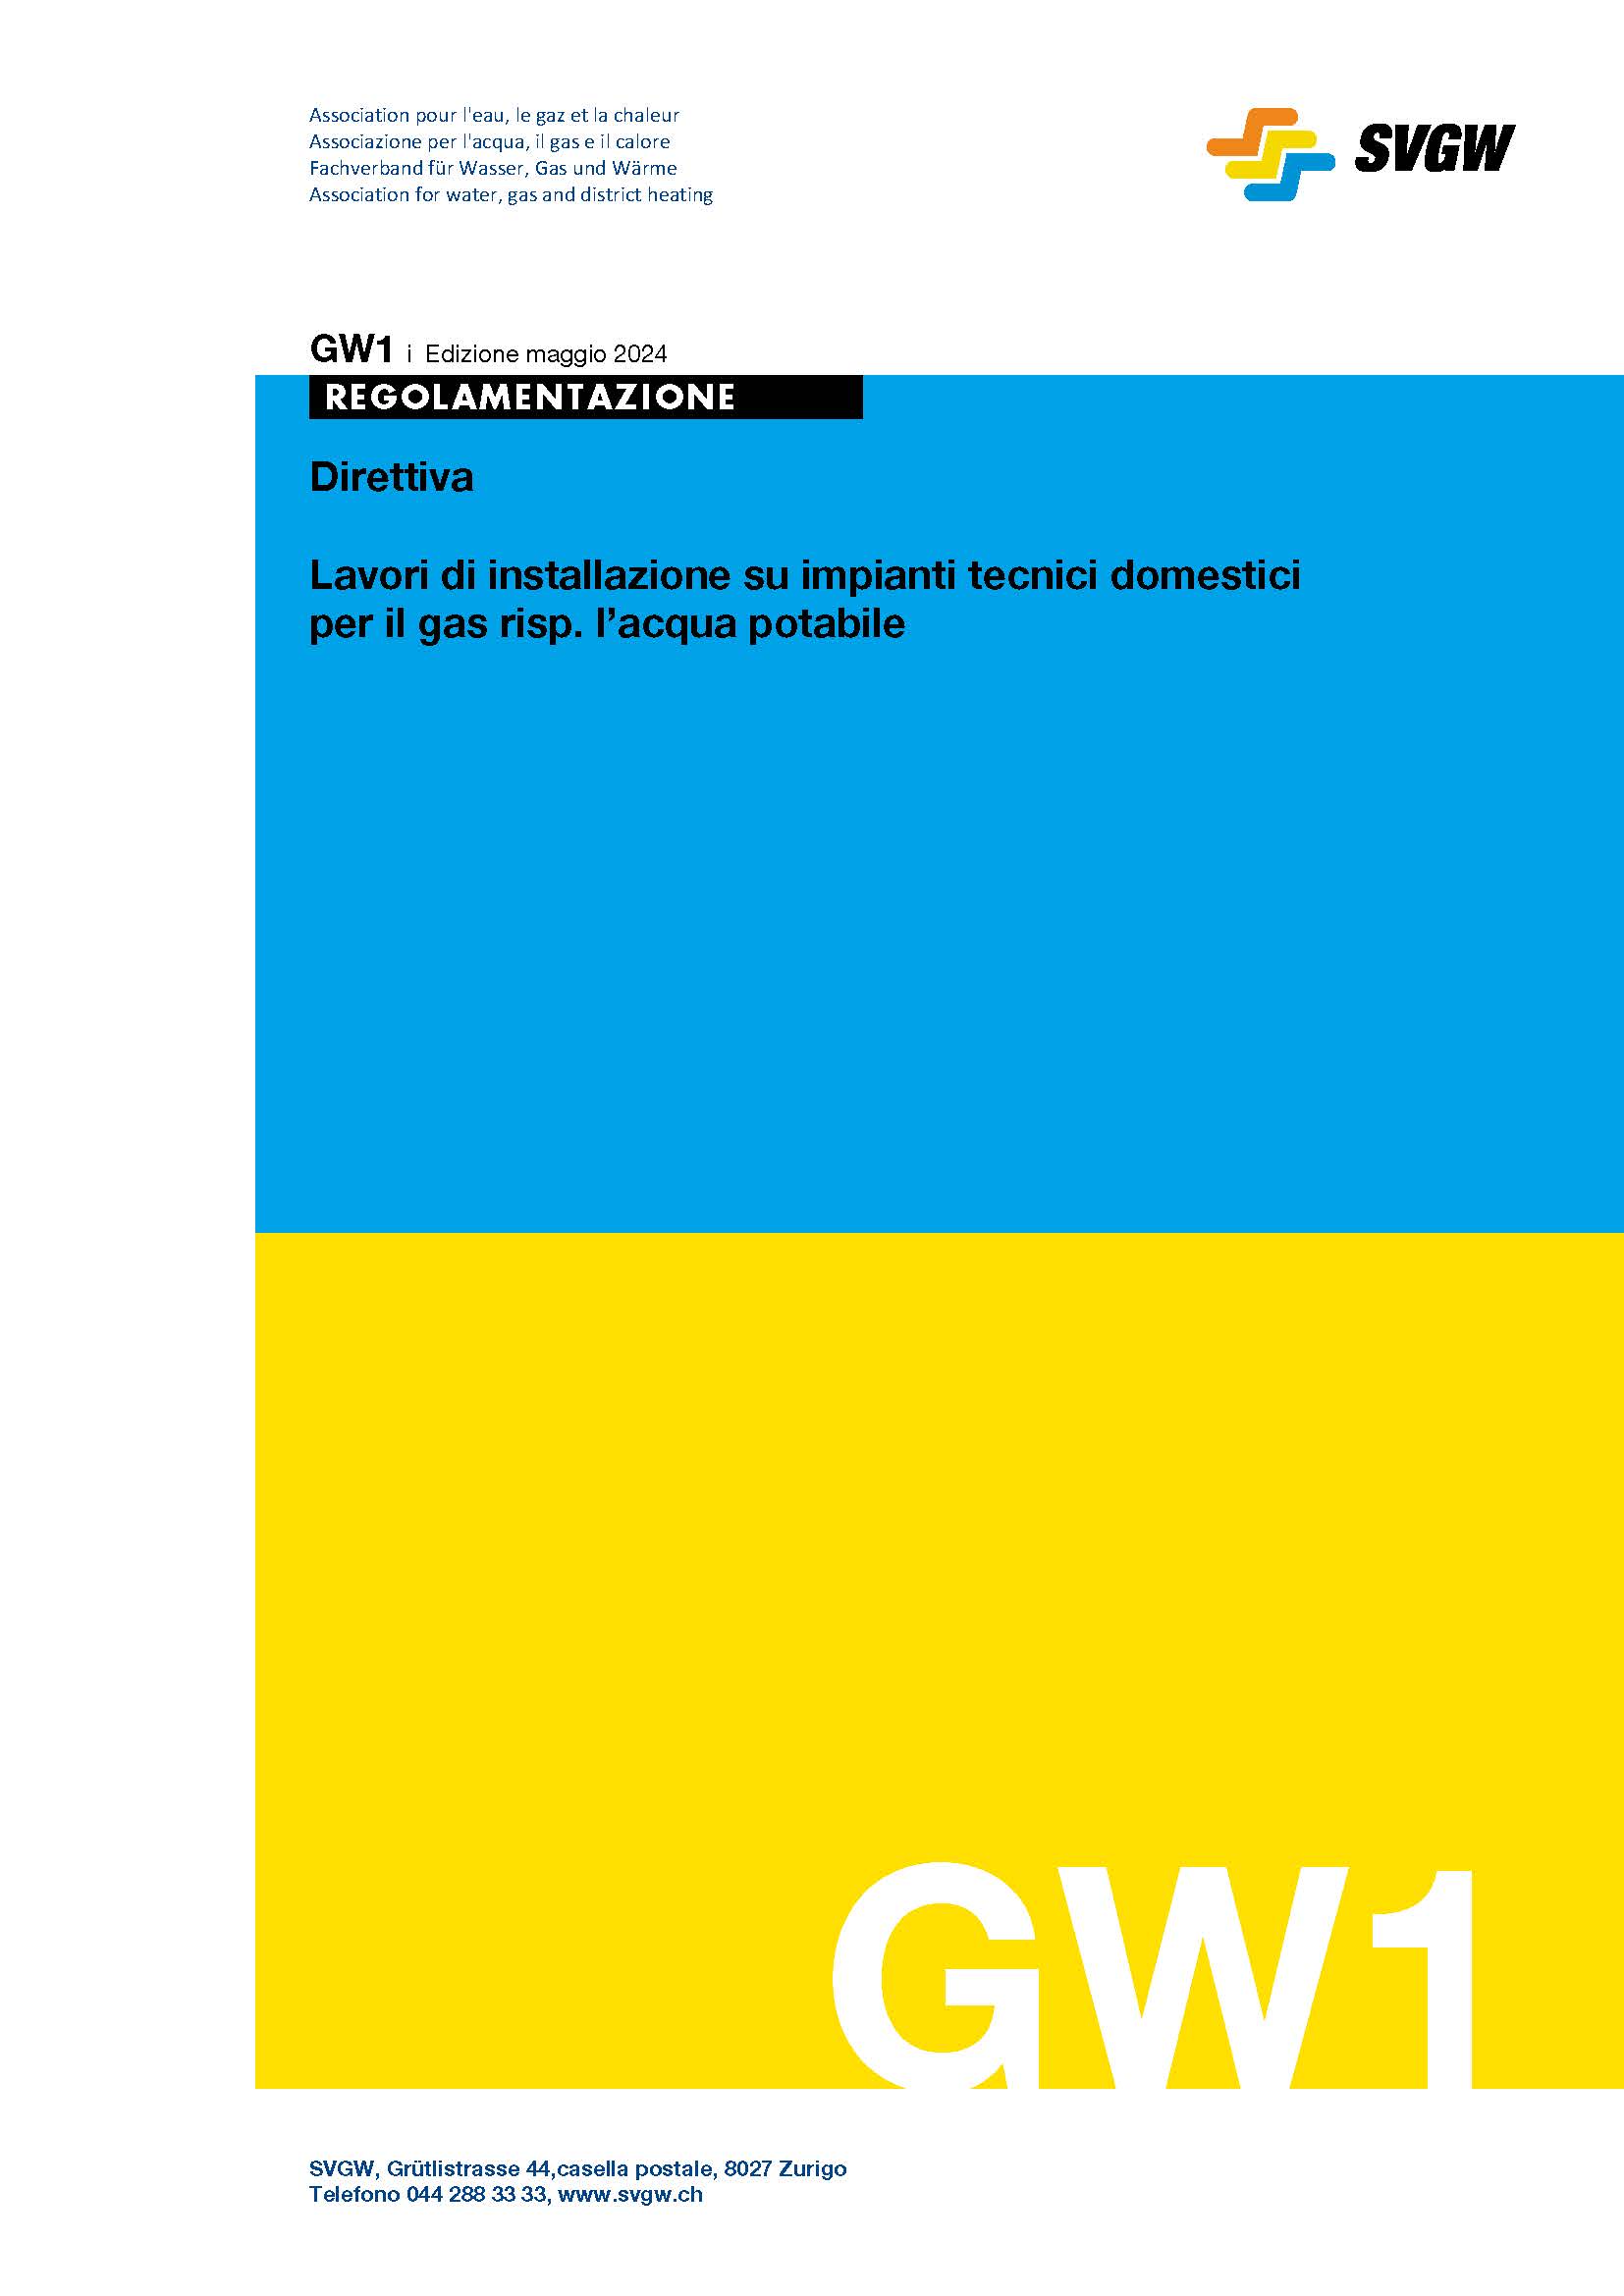 GW1 i Direttiva; Lavori di installazione su impianti tecnici domestici per il gas risp. l’acqua potabile